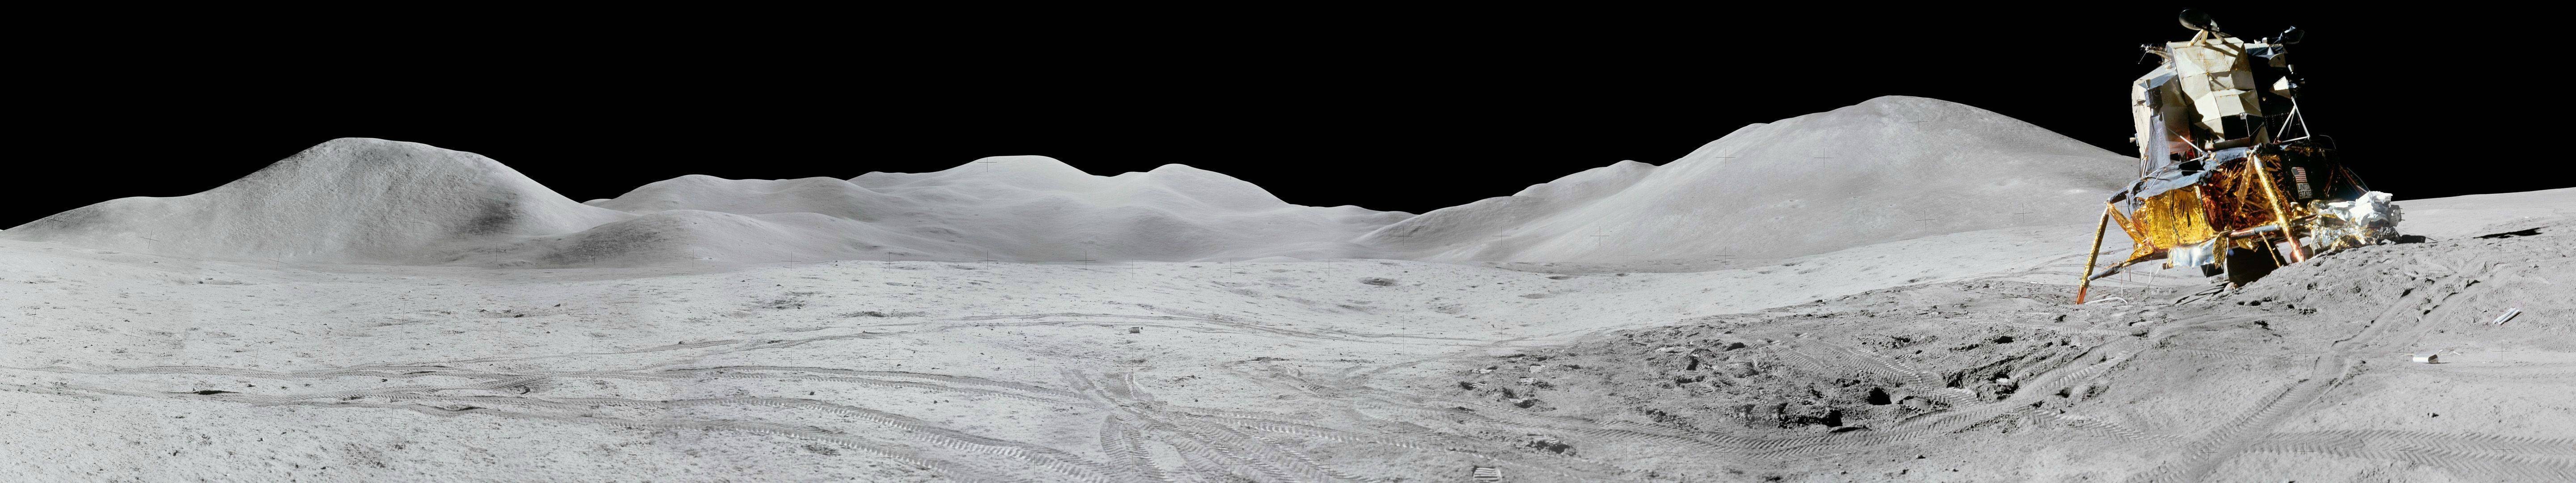 Landscape Moon Apollo 5760x1080